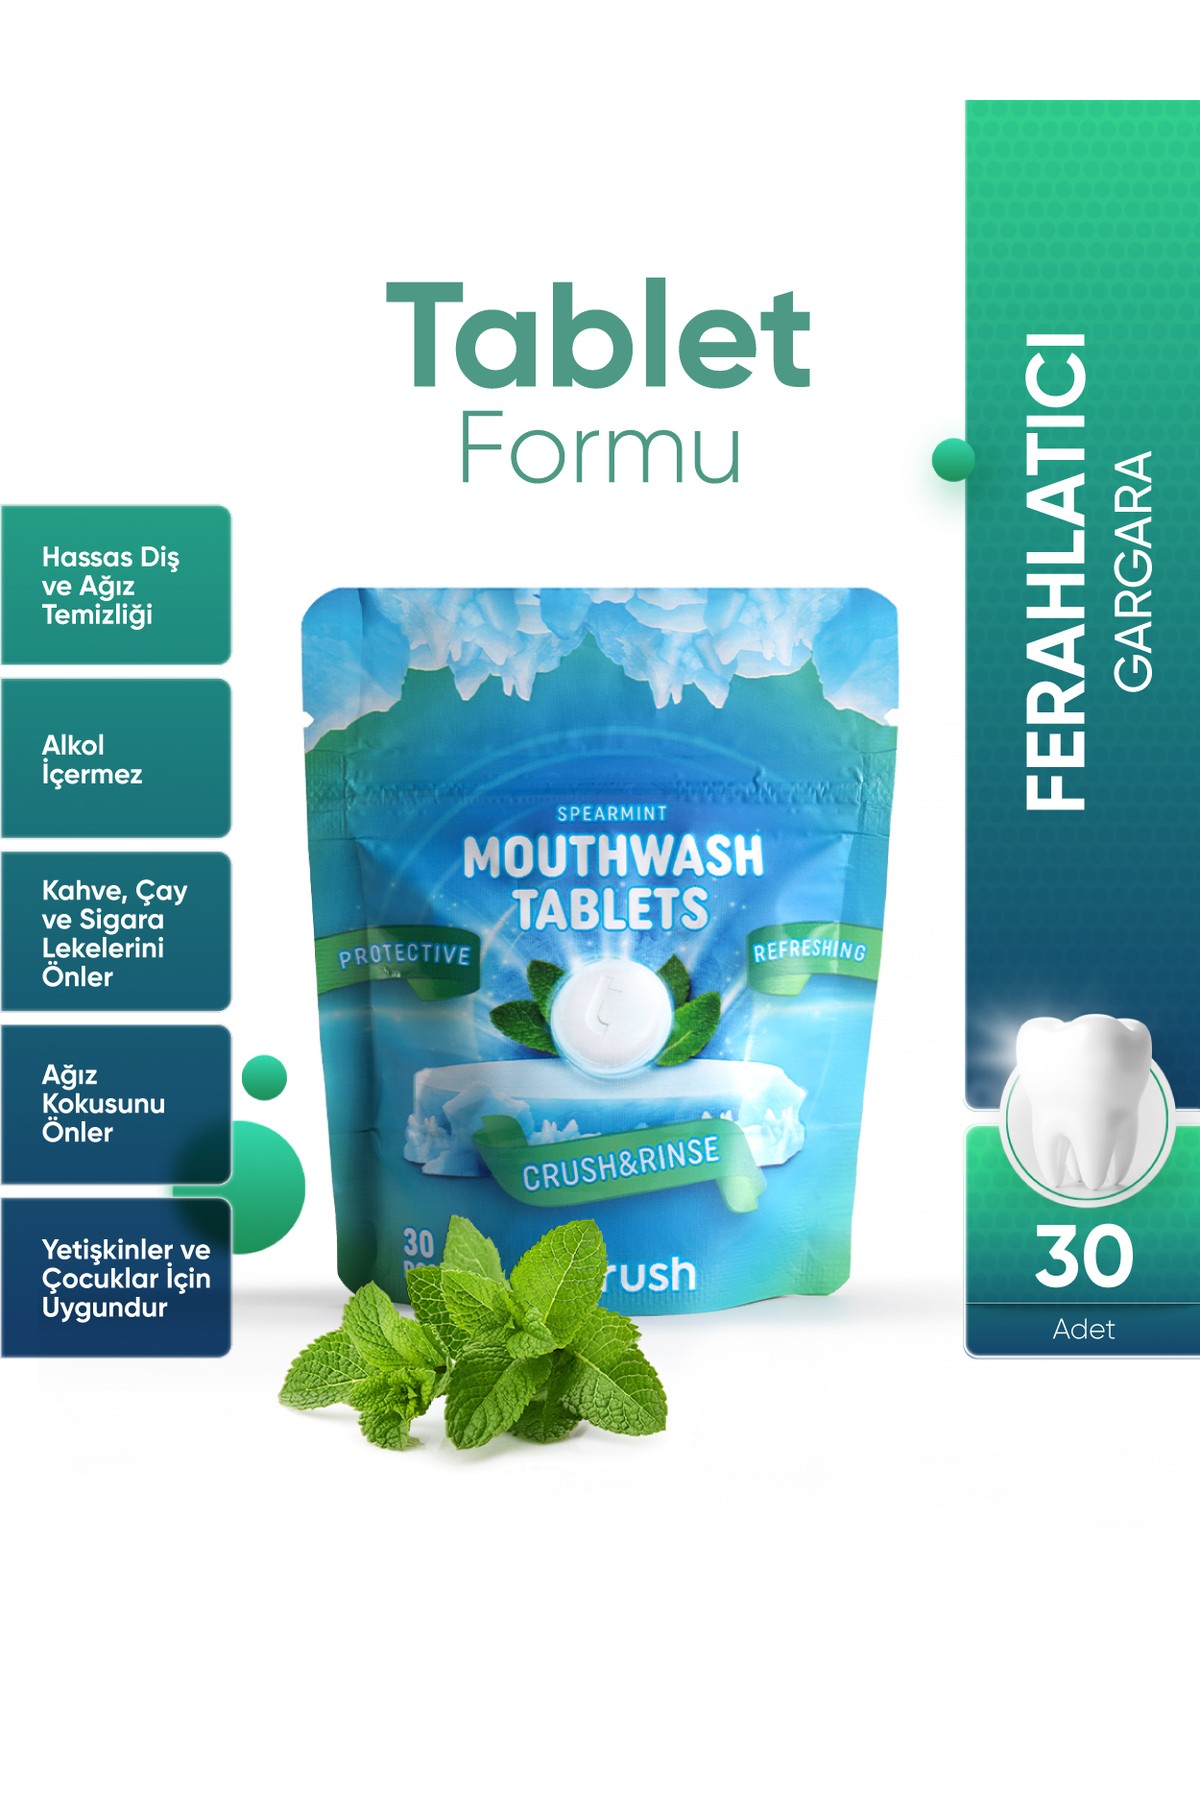 Koruyucu Ve Ferahlatıcı Ağız Çalkalama Tableti 30 Tablet -  Ağız Kokusu Önleyici Mentol ve Nane Aromalı Pastil - Nane Aromalı Diş Macunu Tableti - 30 Tablet